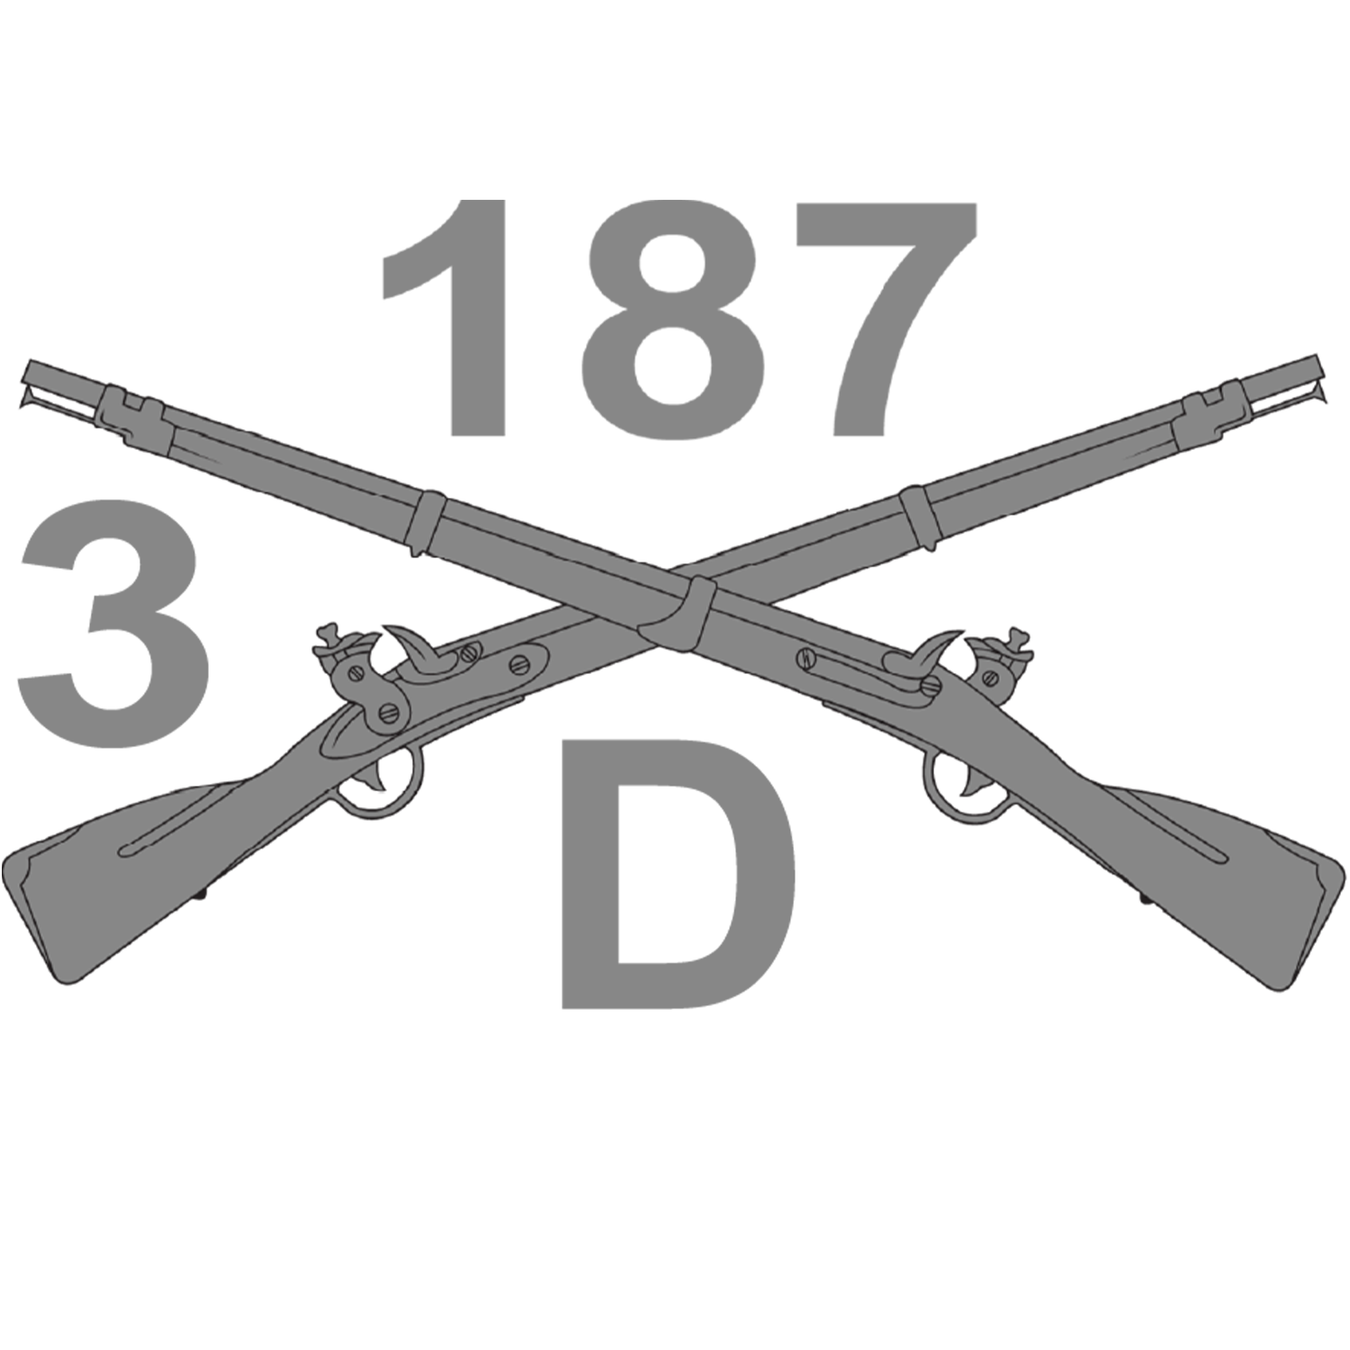 D Co 3-187 Infantry Regiment Merchandise